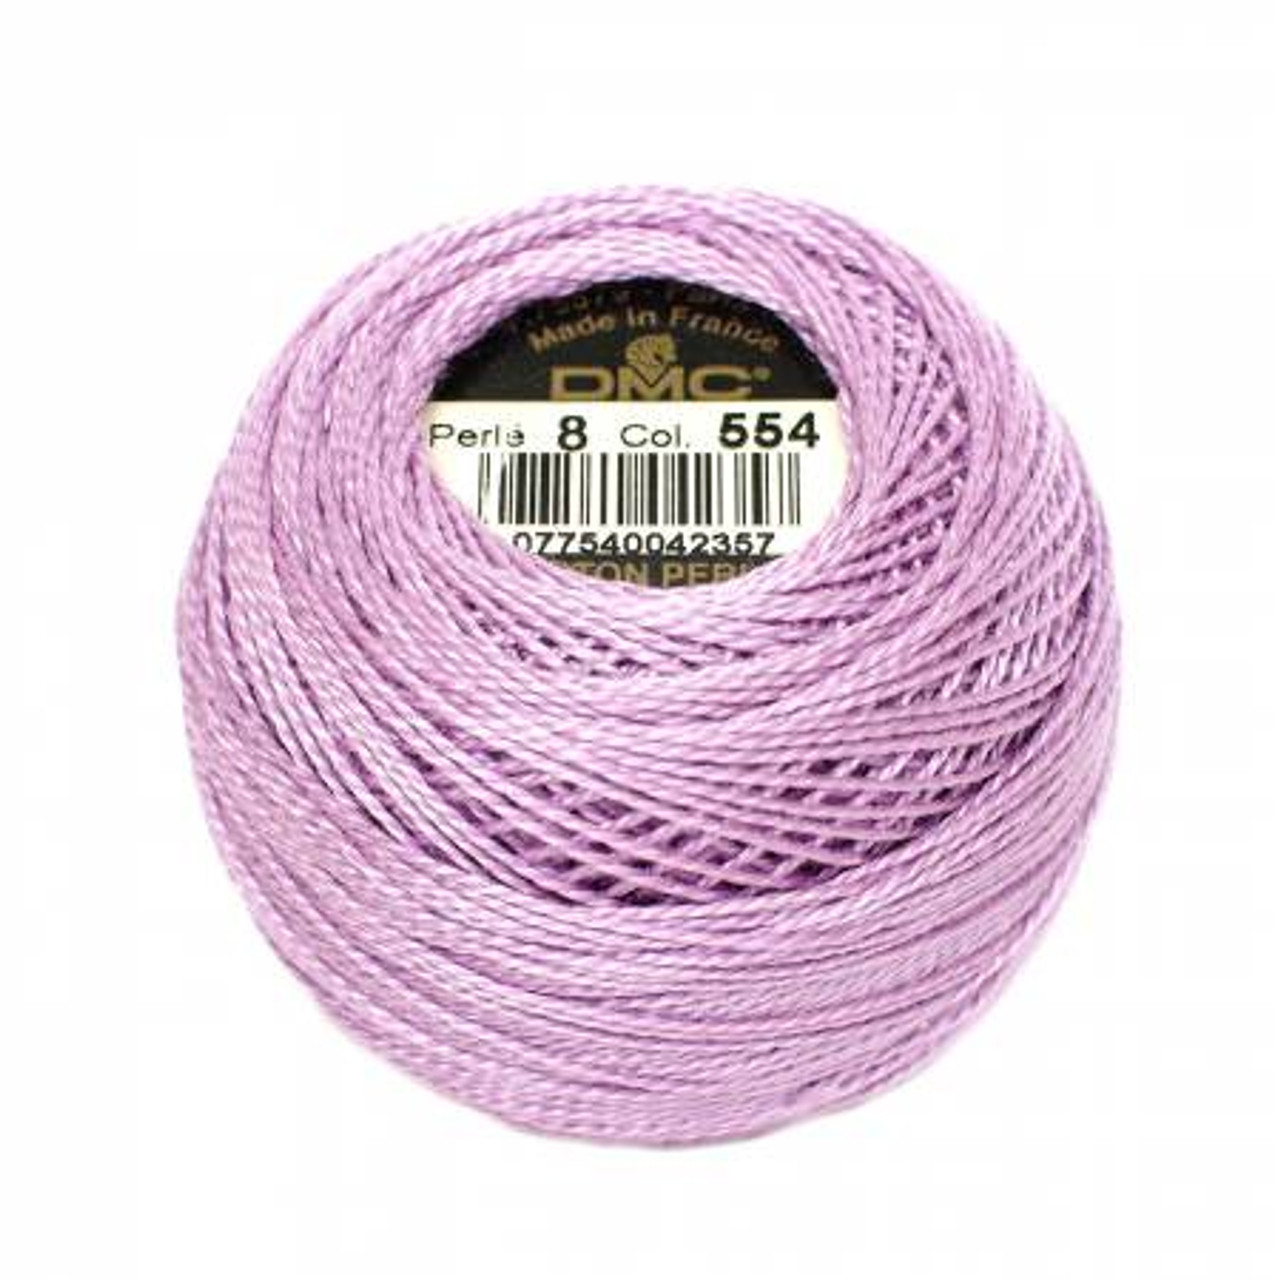 Pearl Cotton Balls - Size 8 - Dark Rose - Color 309 - Meander + Make